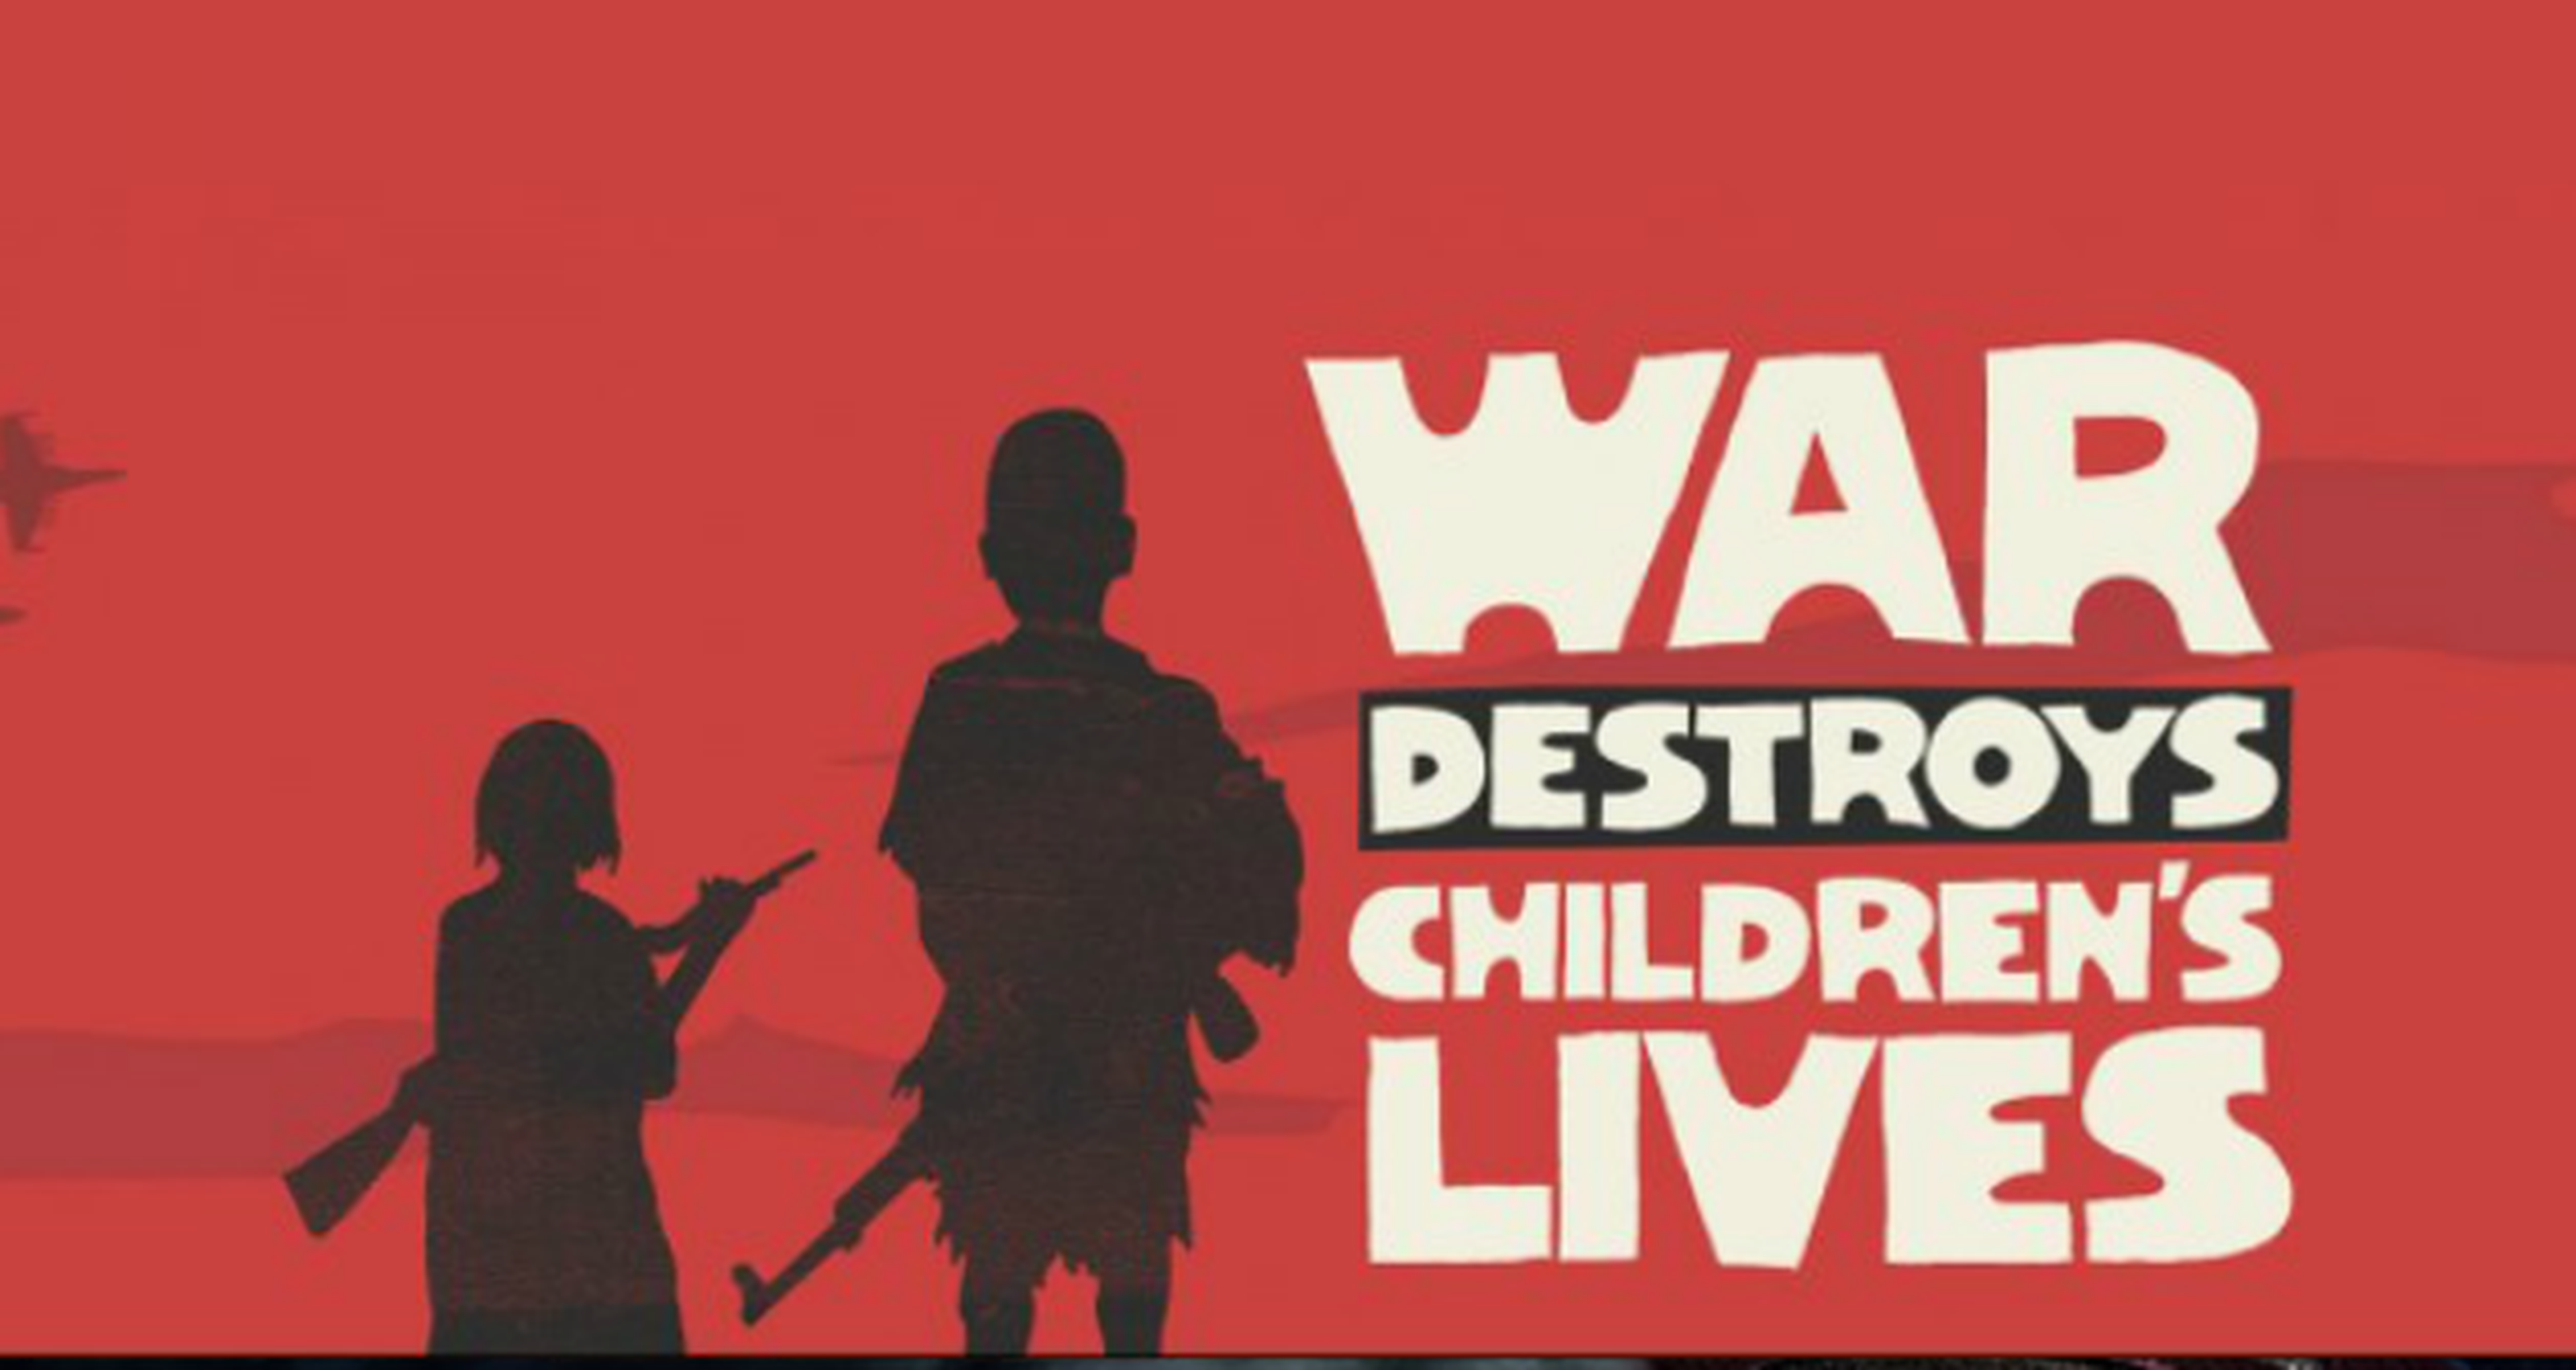 Estudios de videojuegos de todo el mundo se unen para ayudar a los niños víctimas de guerra